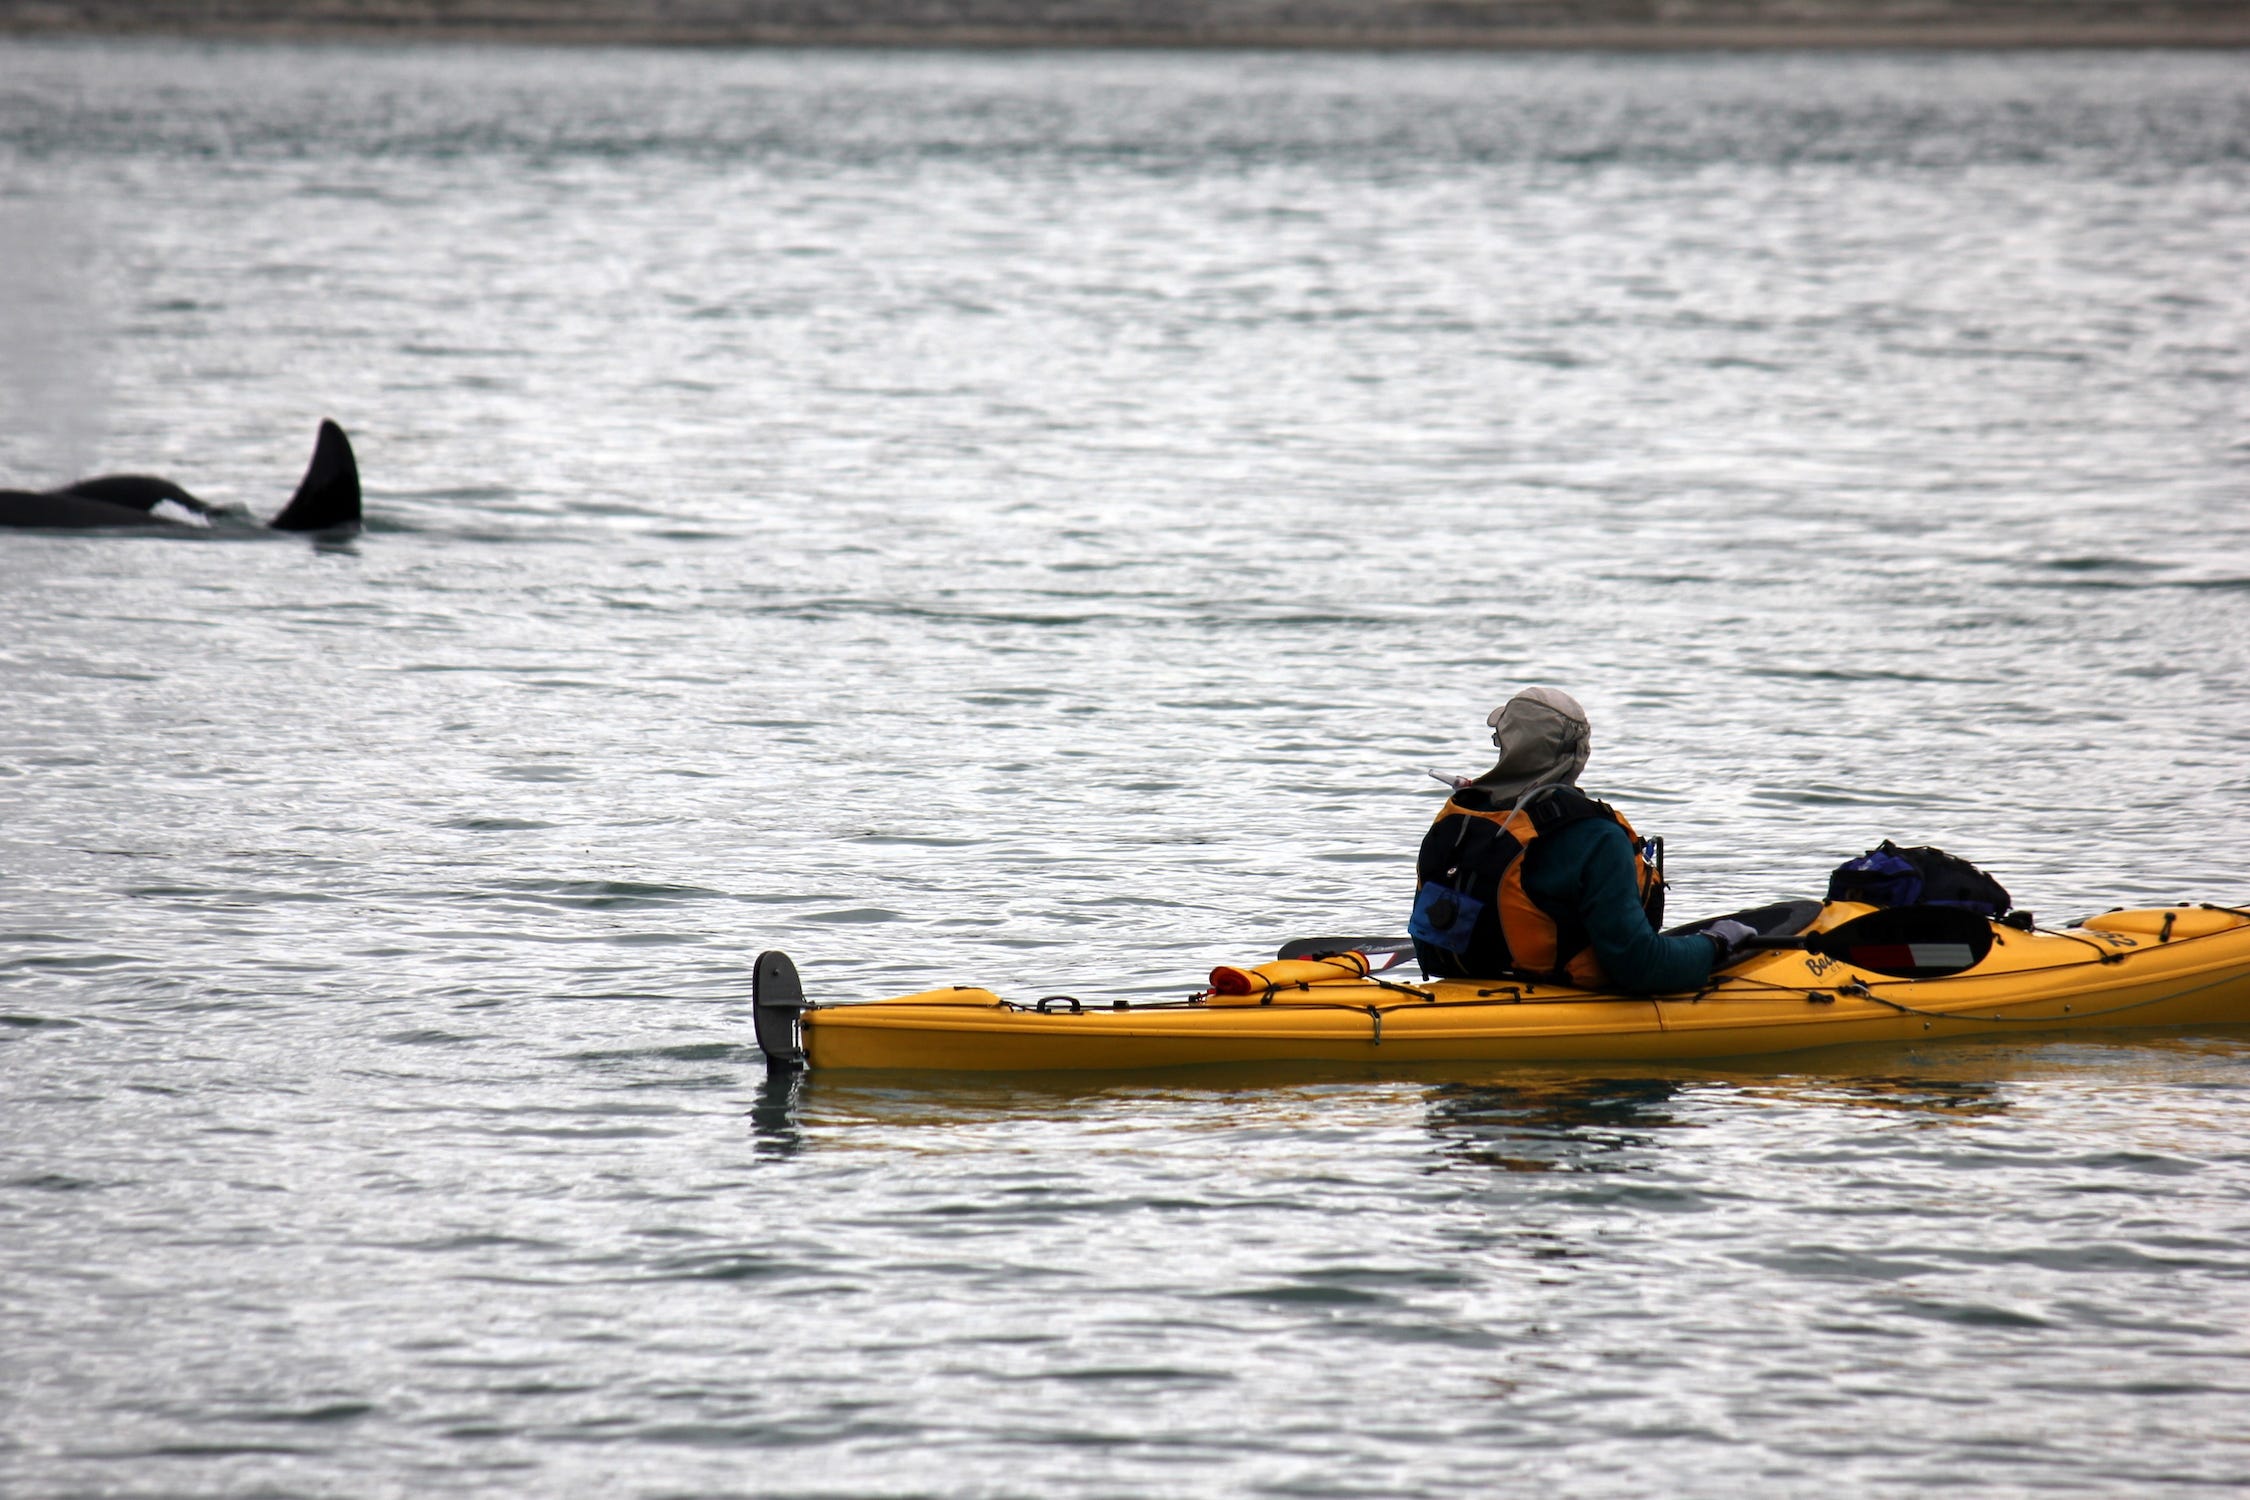 Eine Person in einem gelben Kajak paddelt auf dem Wasser in der Nähe eines Orca-Wals.